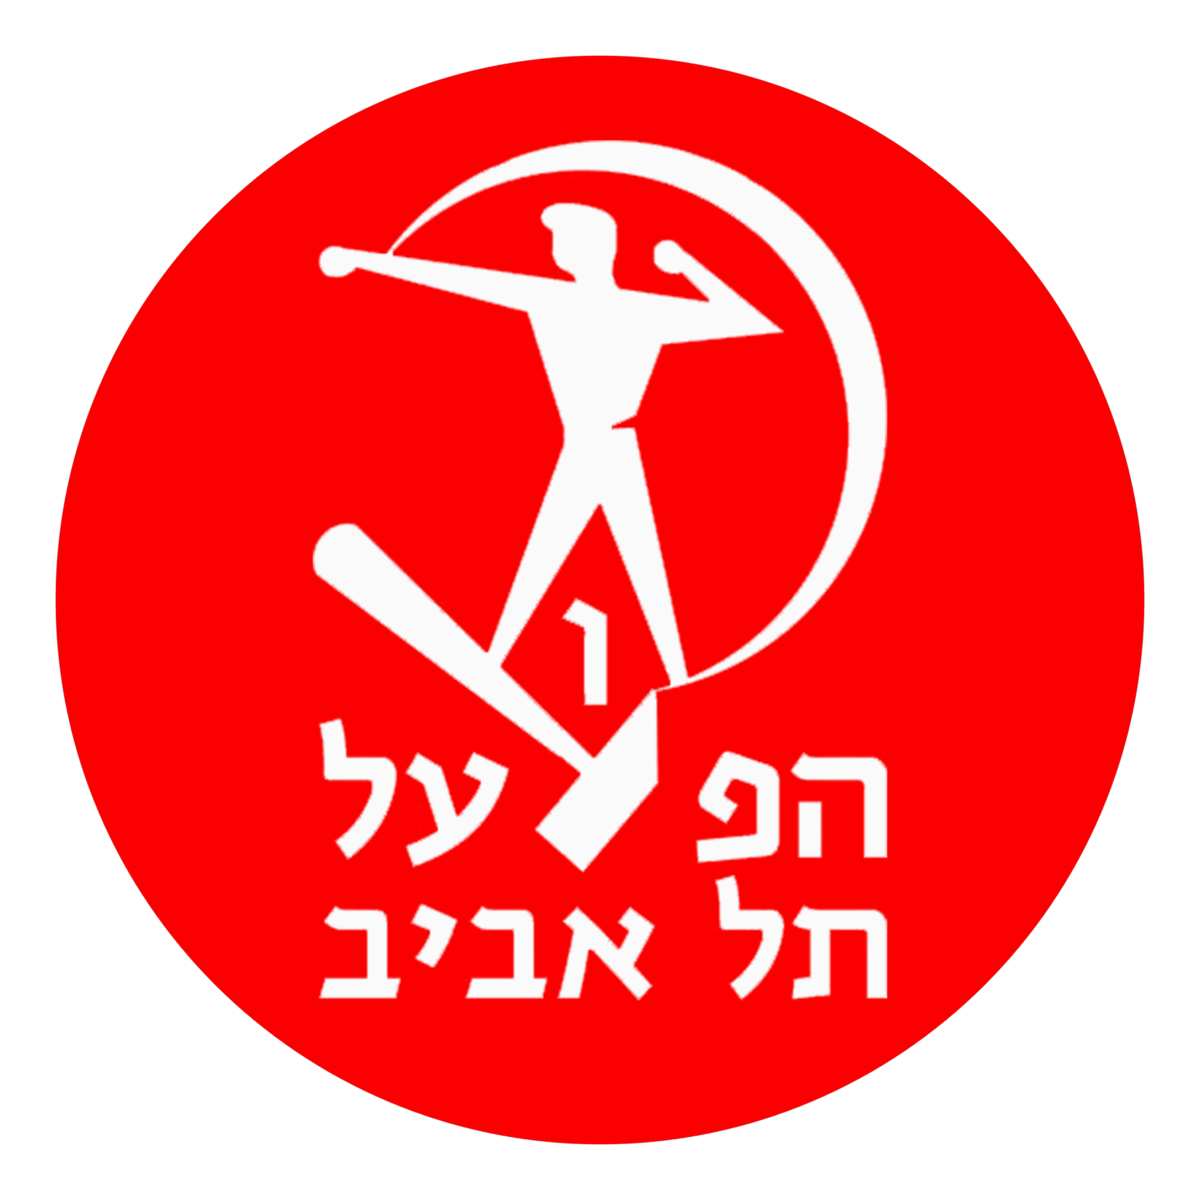 הפועל תל אביב (כדורסל) – ויקיפדיה